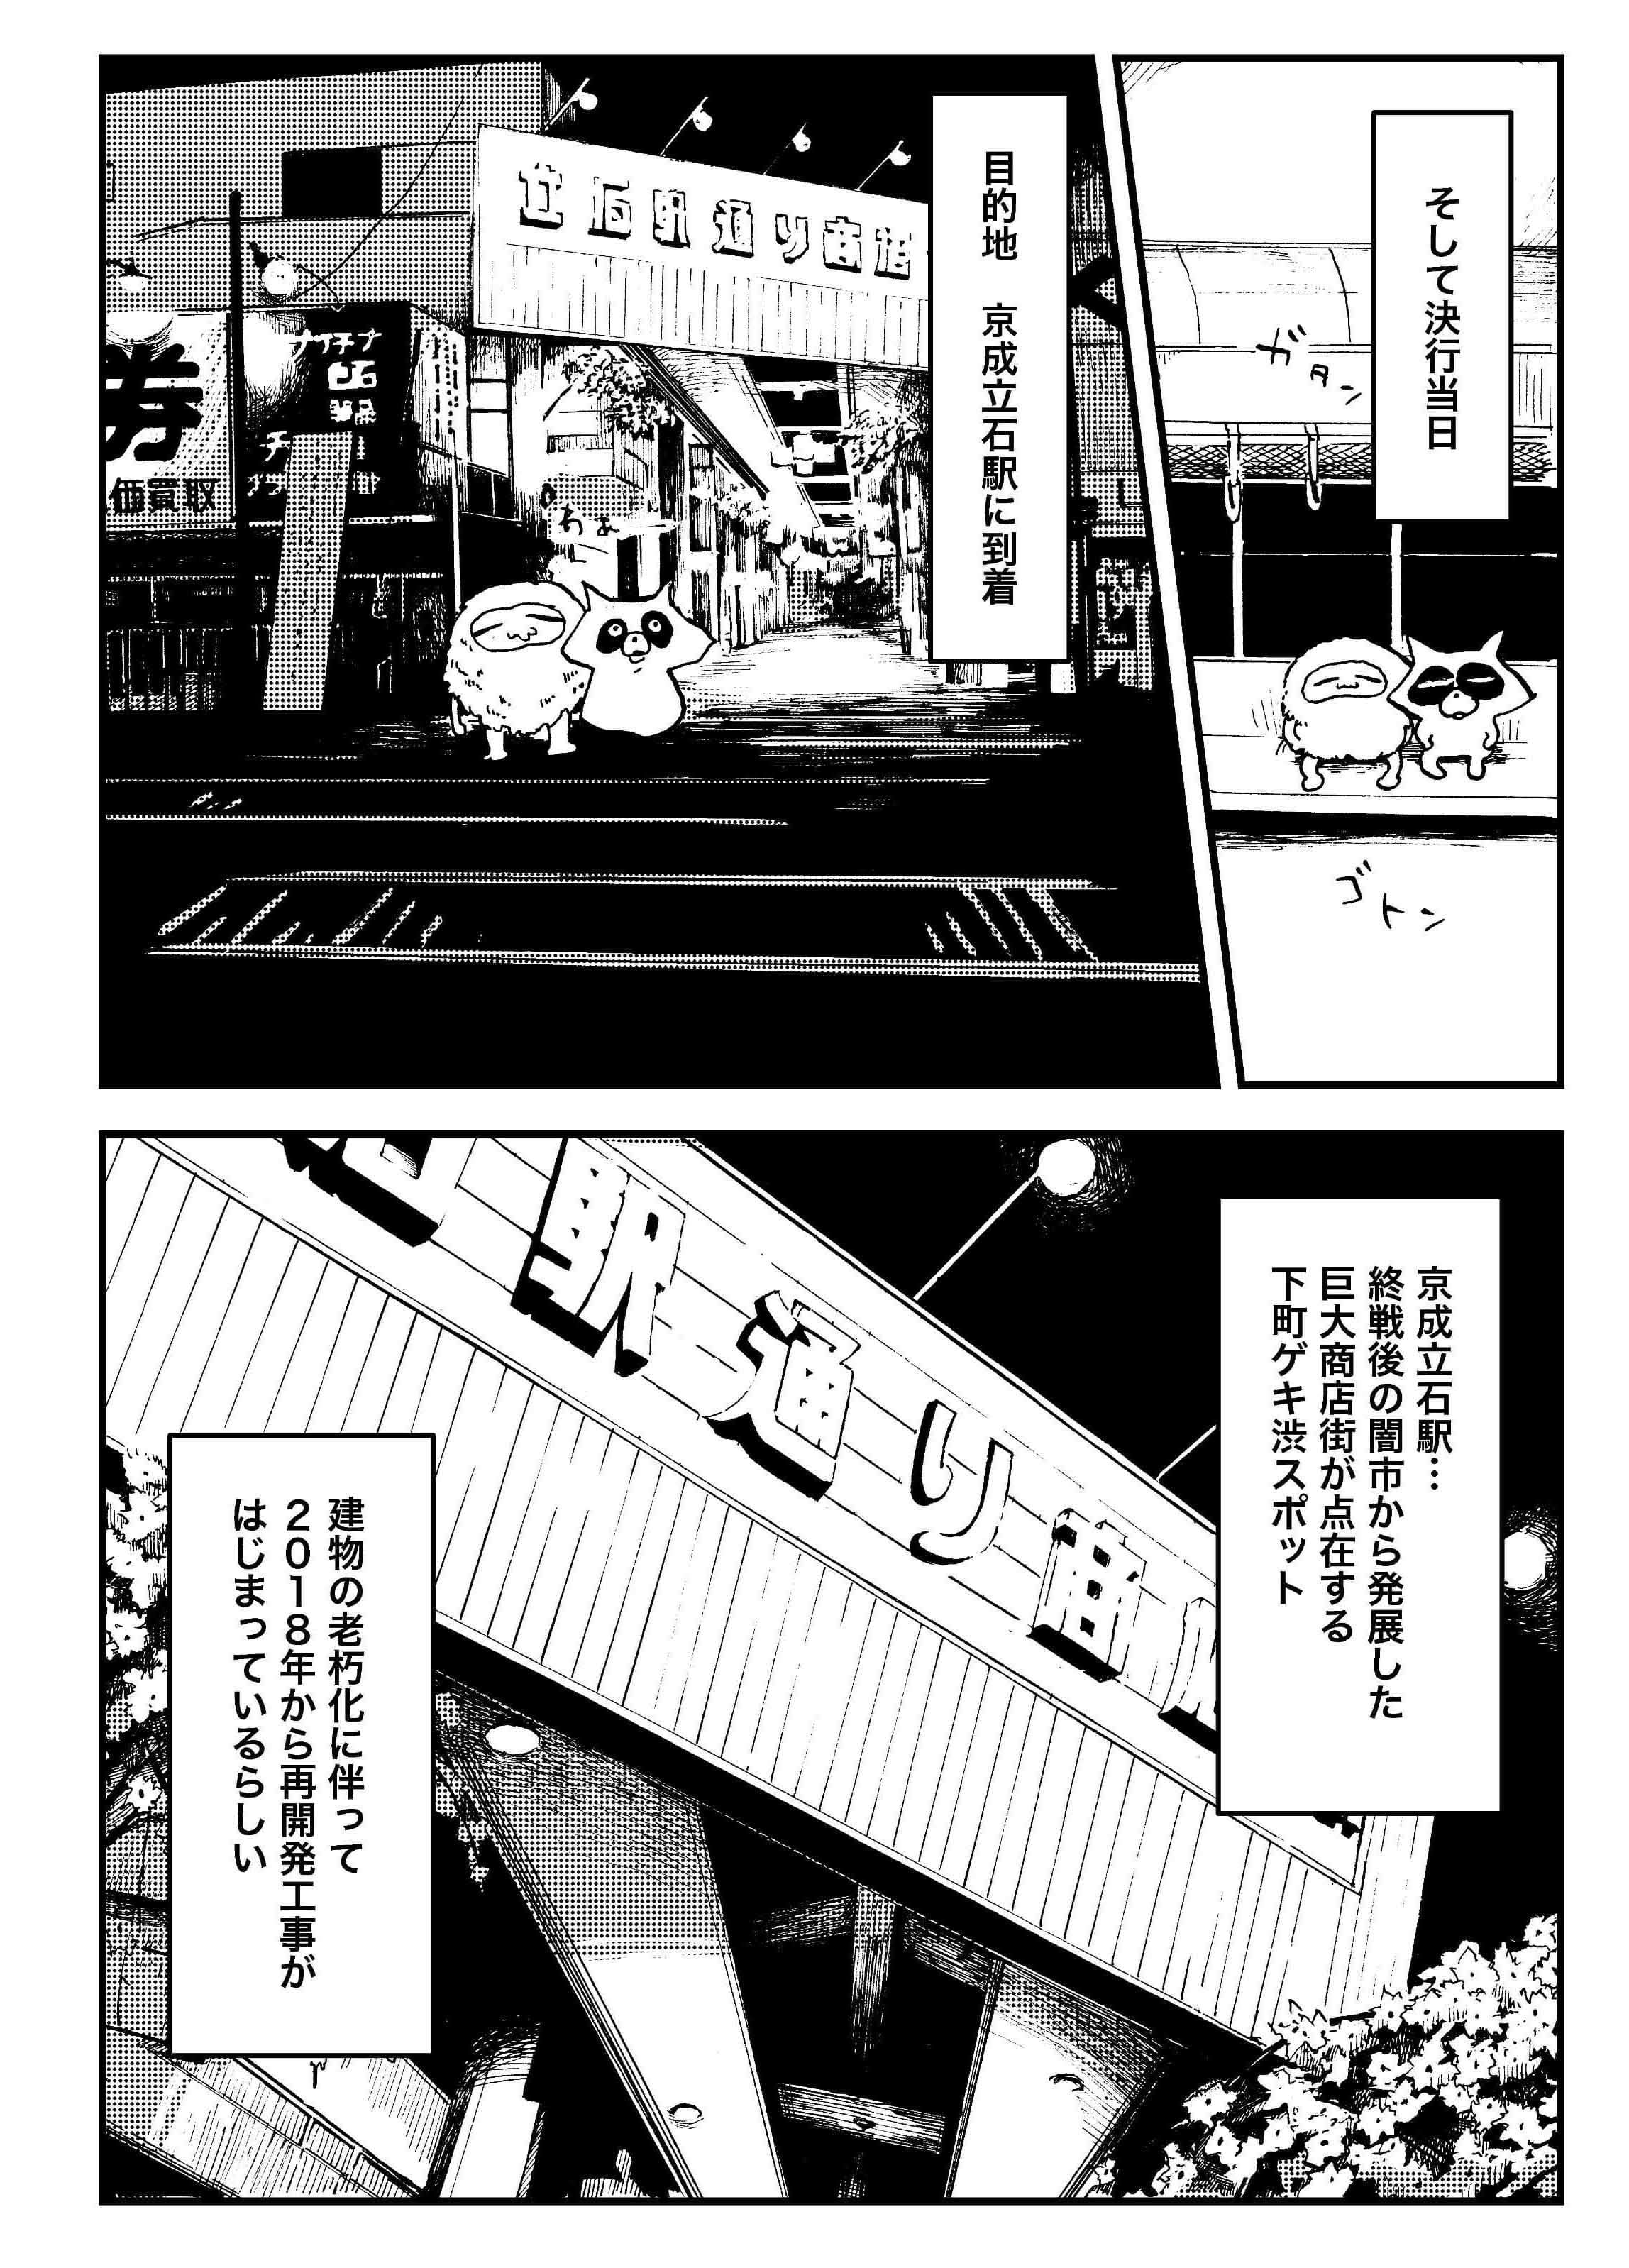 『夜活～夜の街を散歩した日記漫画～』／森凡 ３.jpg